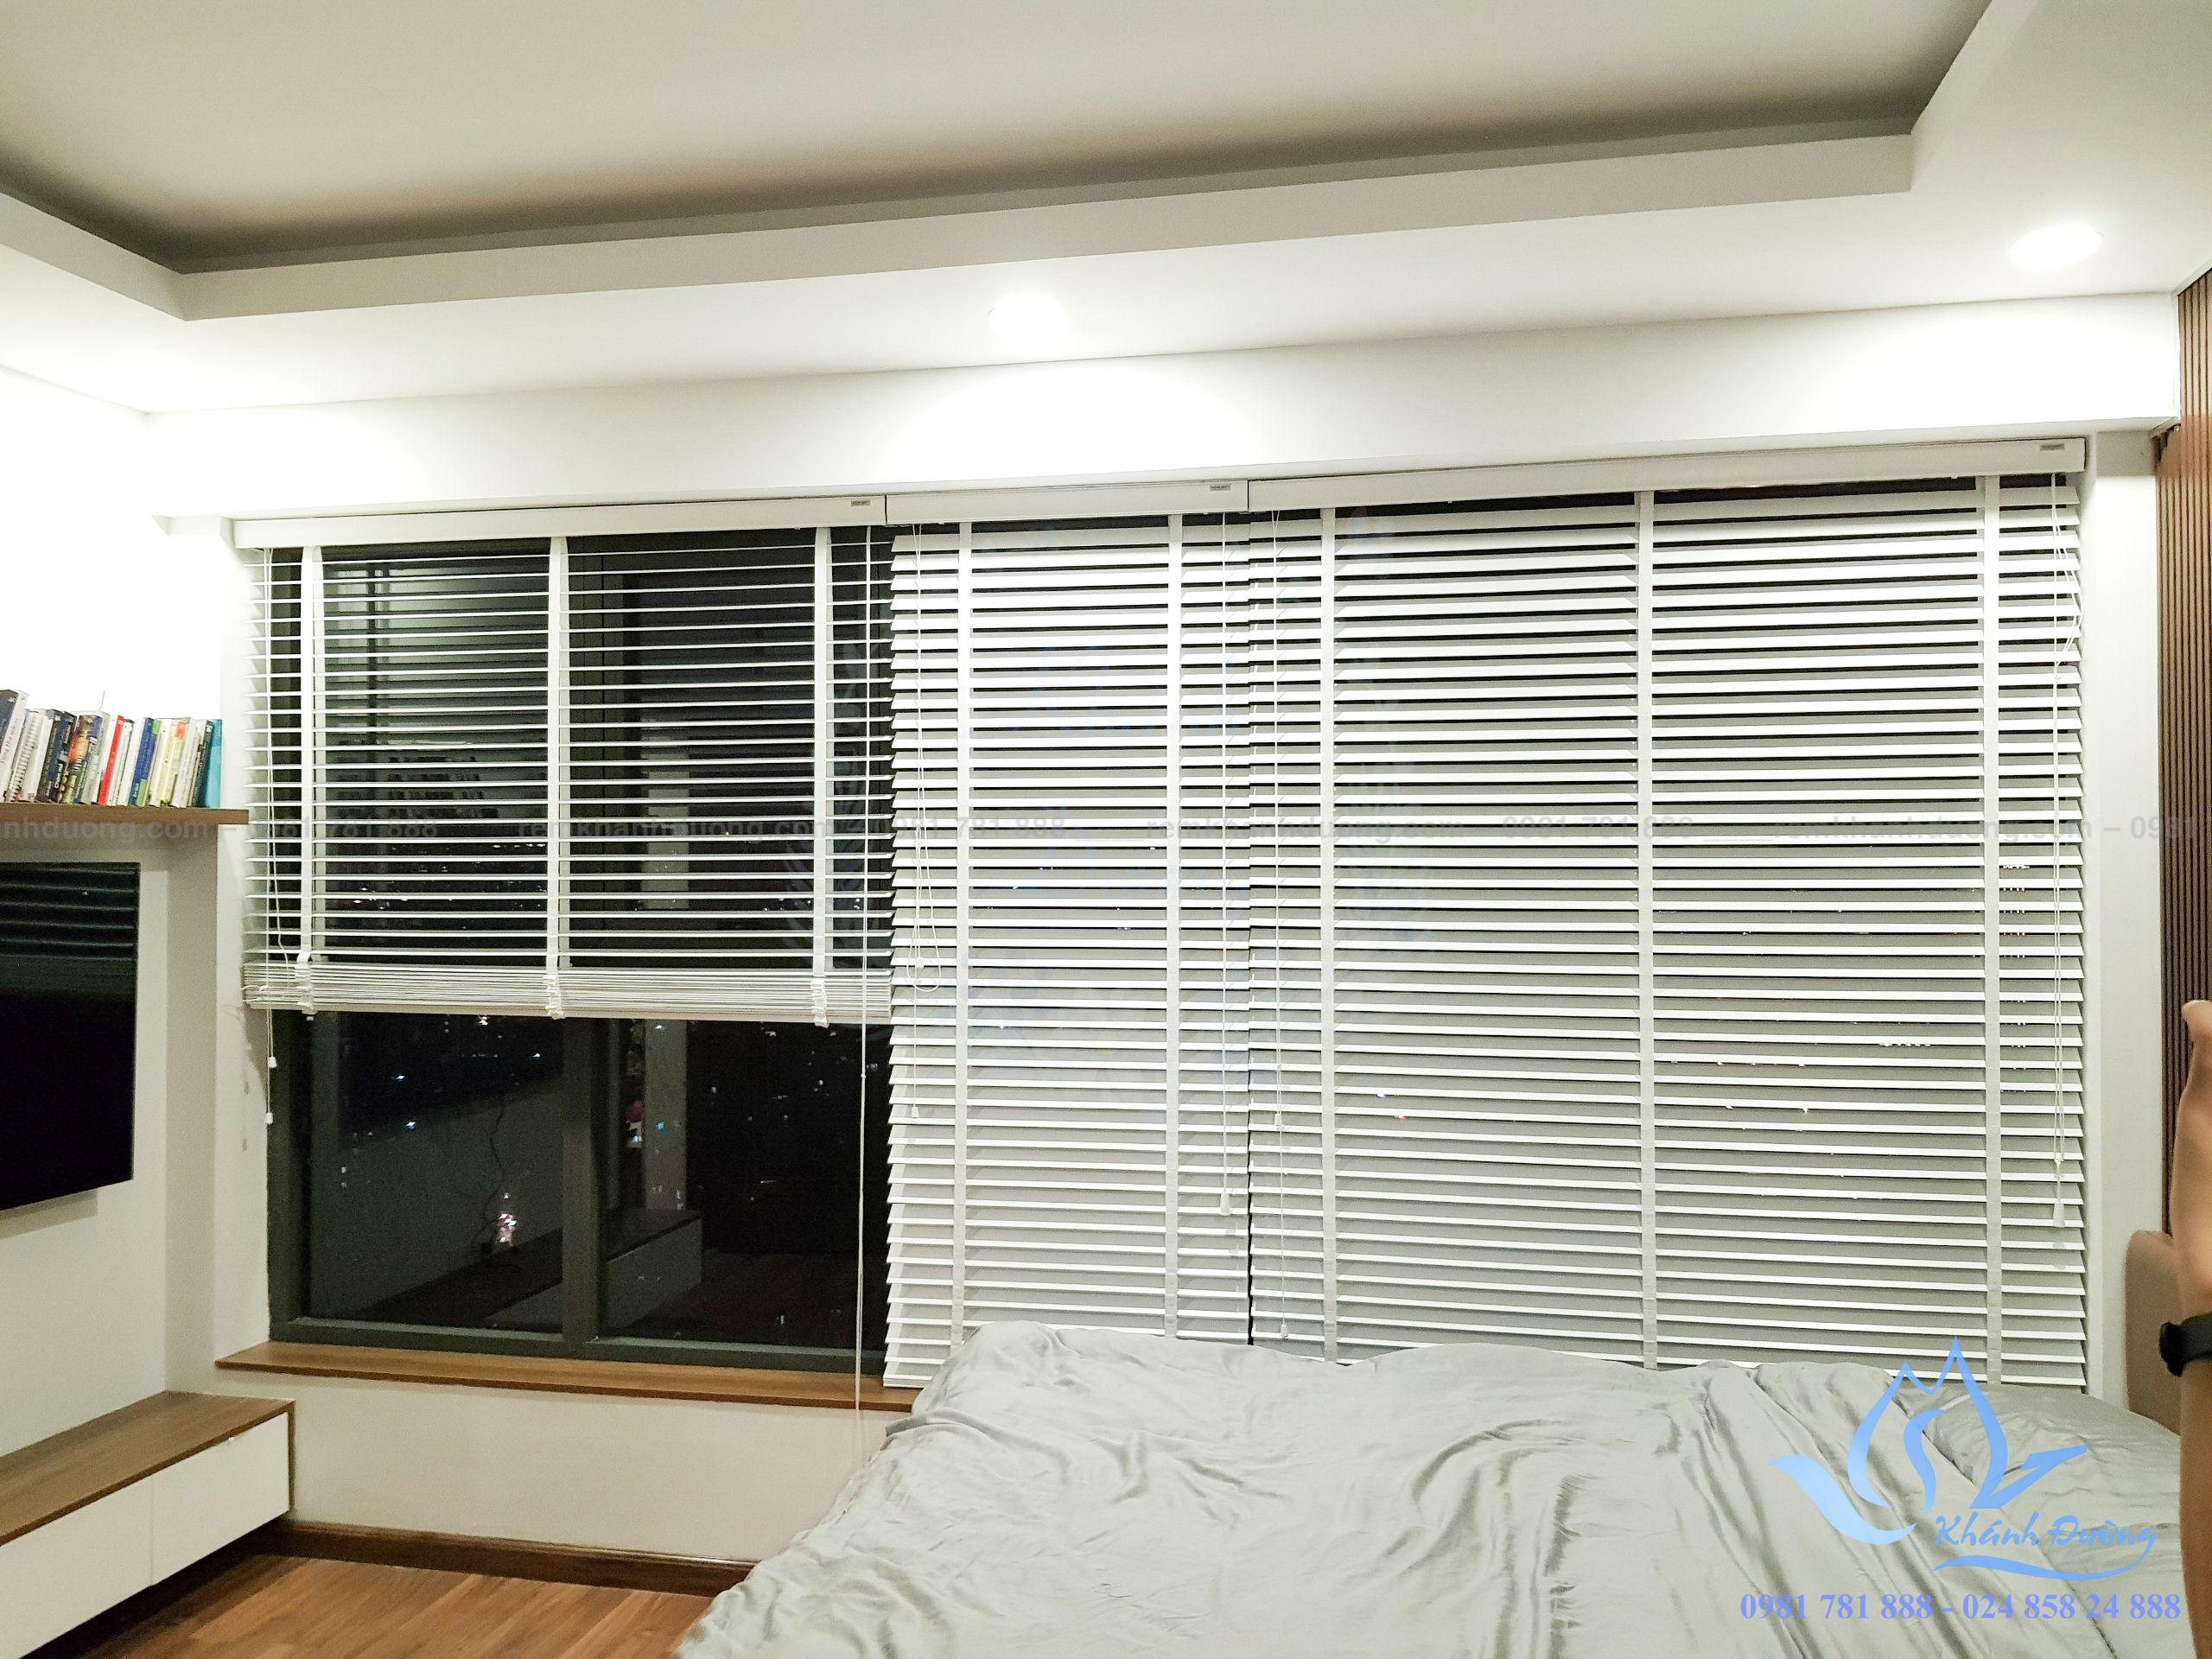 Với các mẫu rèm cửa sổ phòng ngủ hiện đại, bạn sẽ không chỉ tạo nên sự sang trọng cho căn phòng của mình mà còn giúp tiết kiệm năng lượng khi sử dụng điều hòa. Với rèm cửa sổ chất liệu tốt và thiết kế đẹp mắt, căn phòng của bạn sẽ trở nên ấm áp hơn trong những ngày đông giá lạnh.